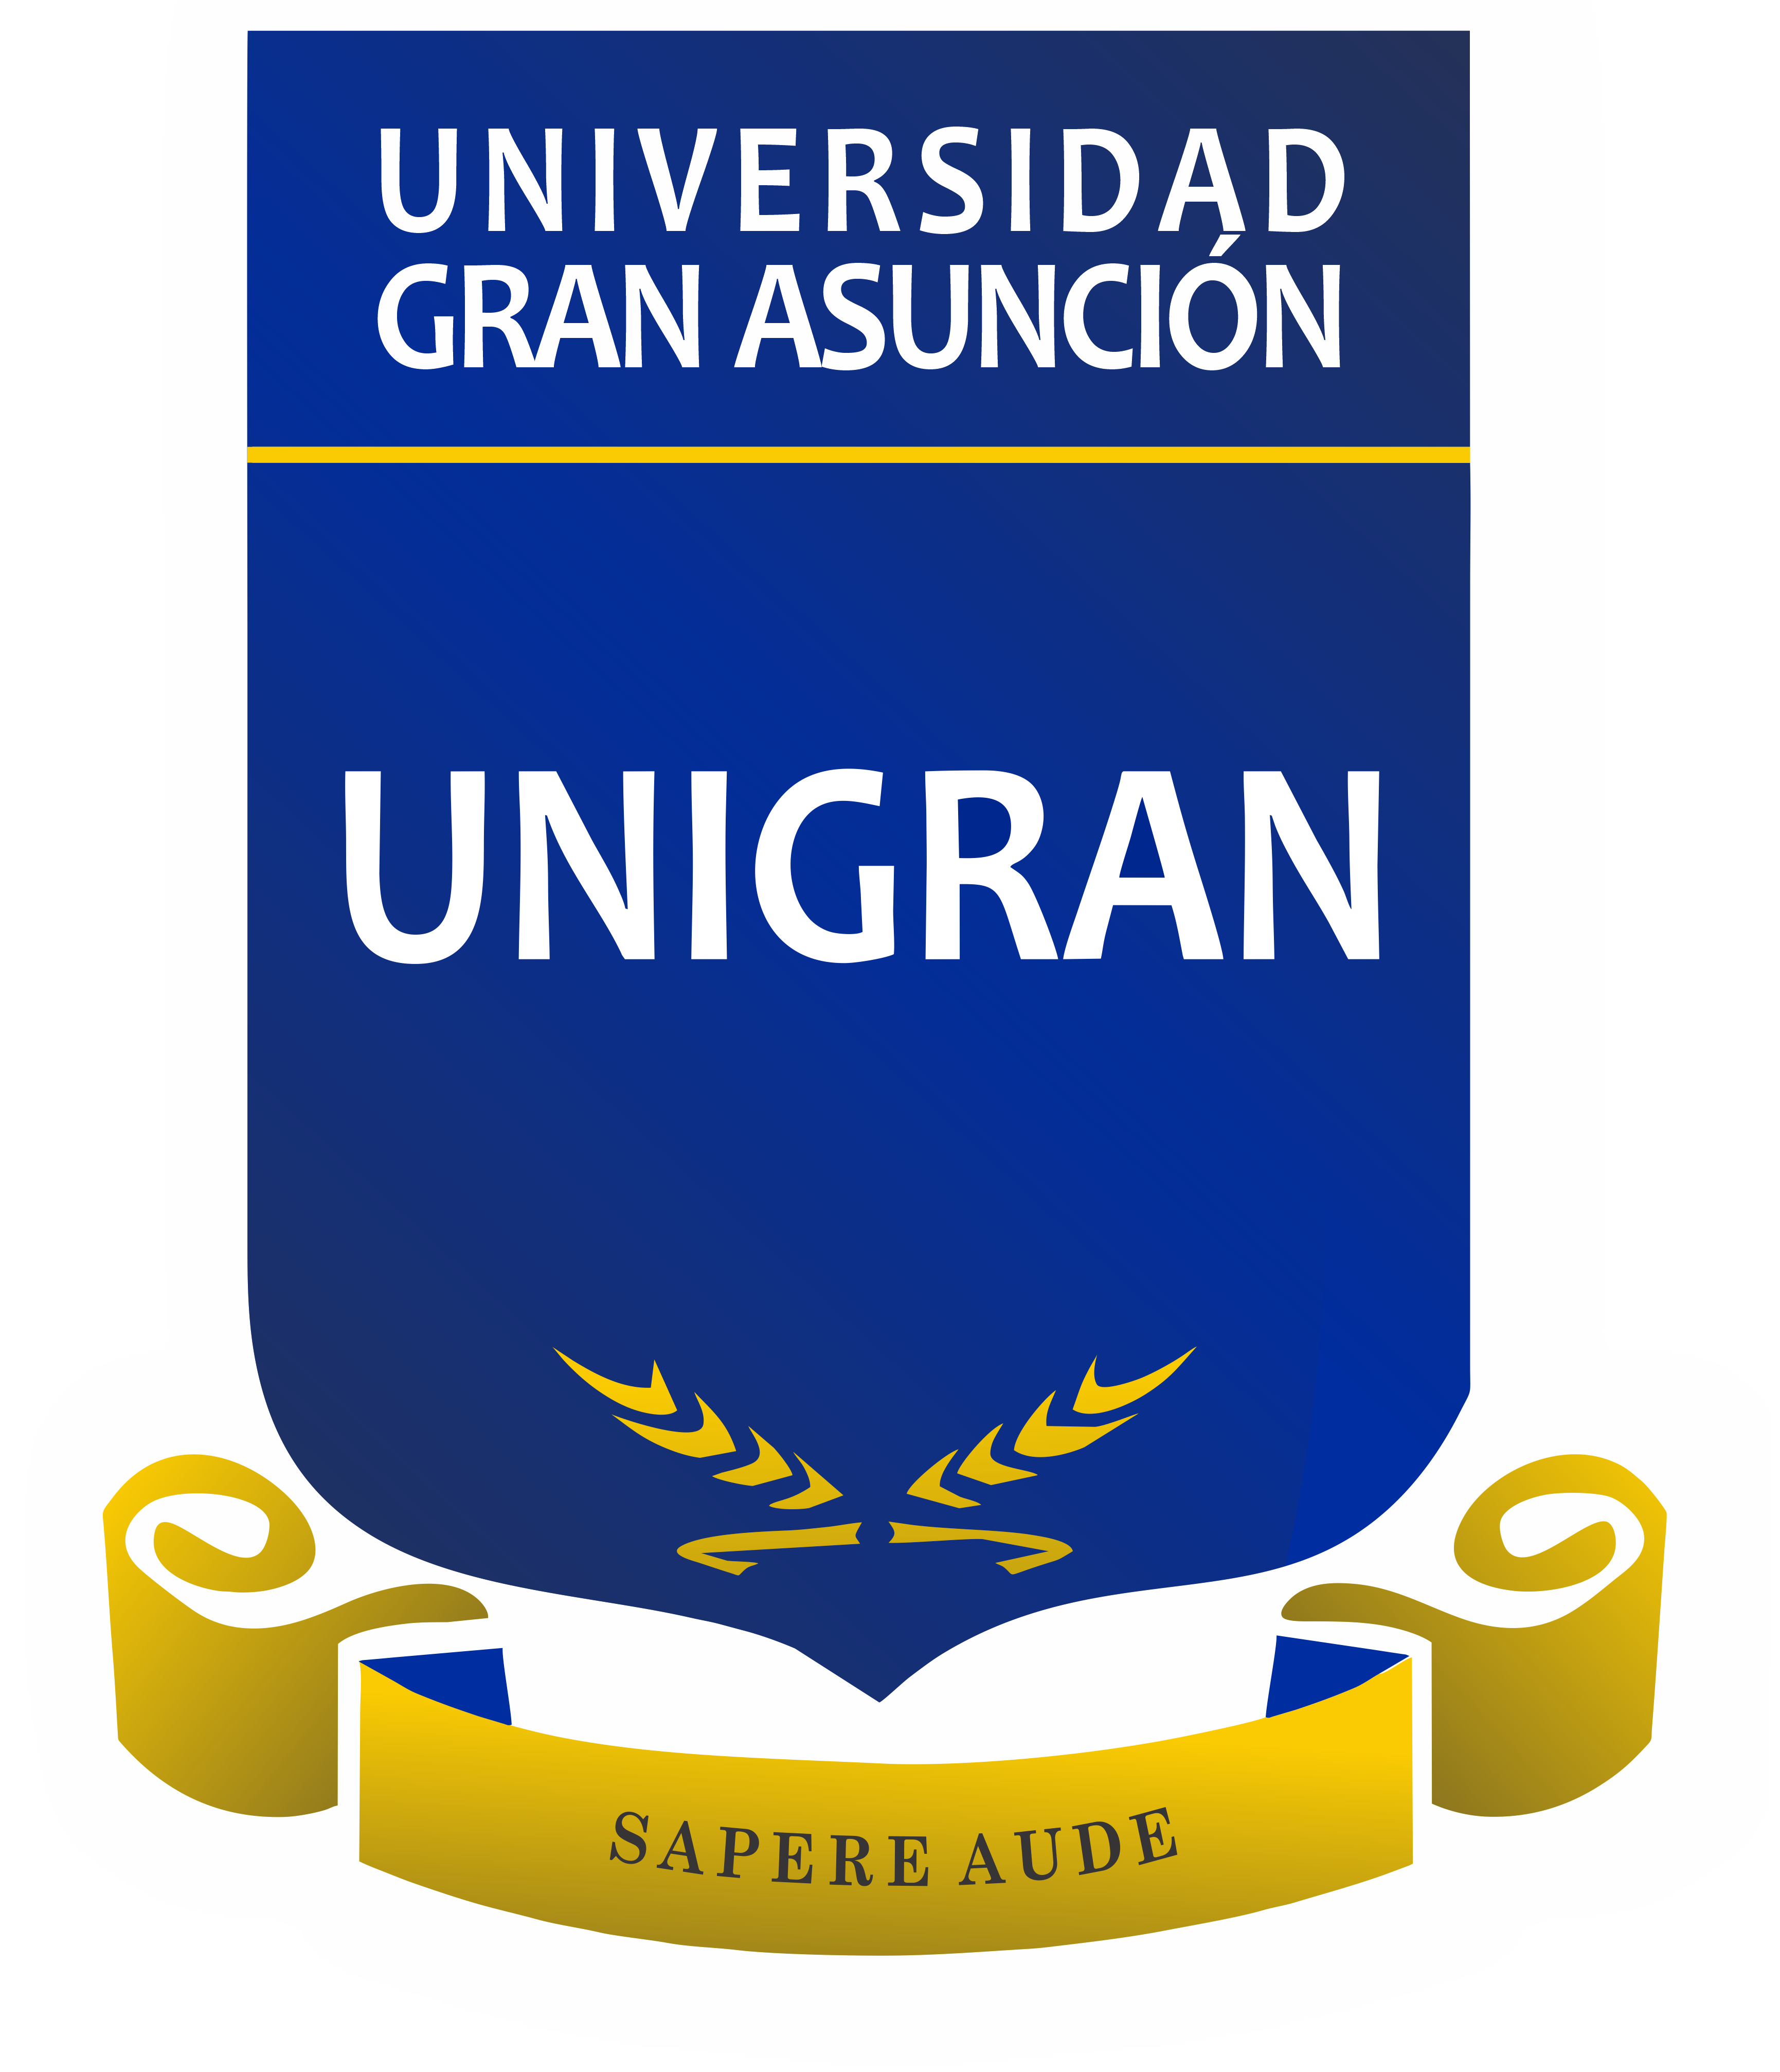 UNIGRAN - Universidad Gran Asunción